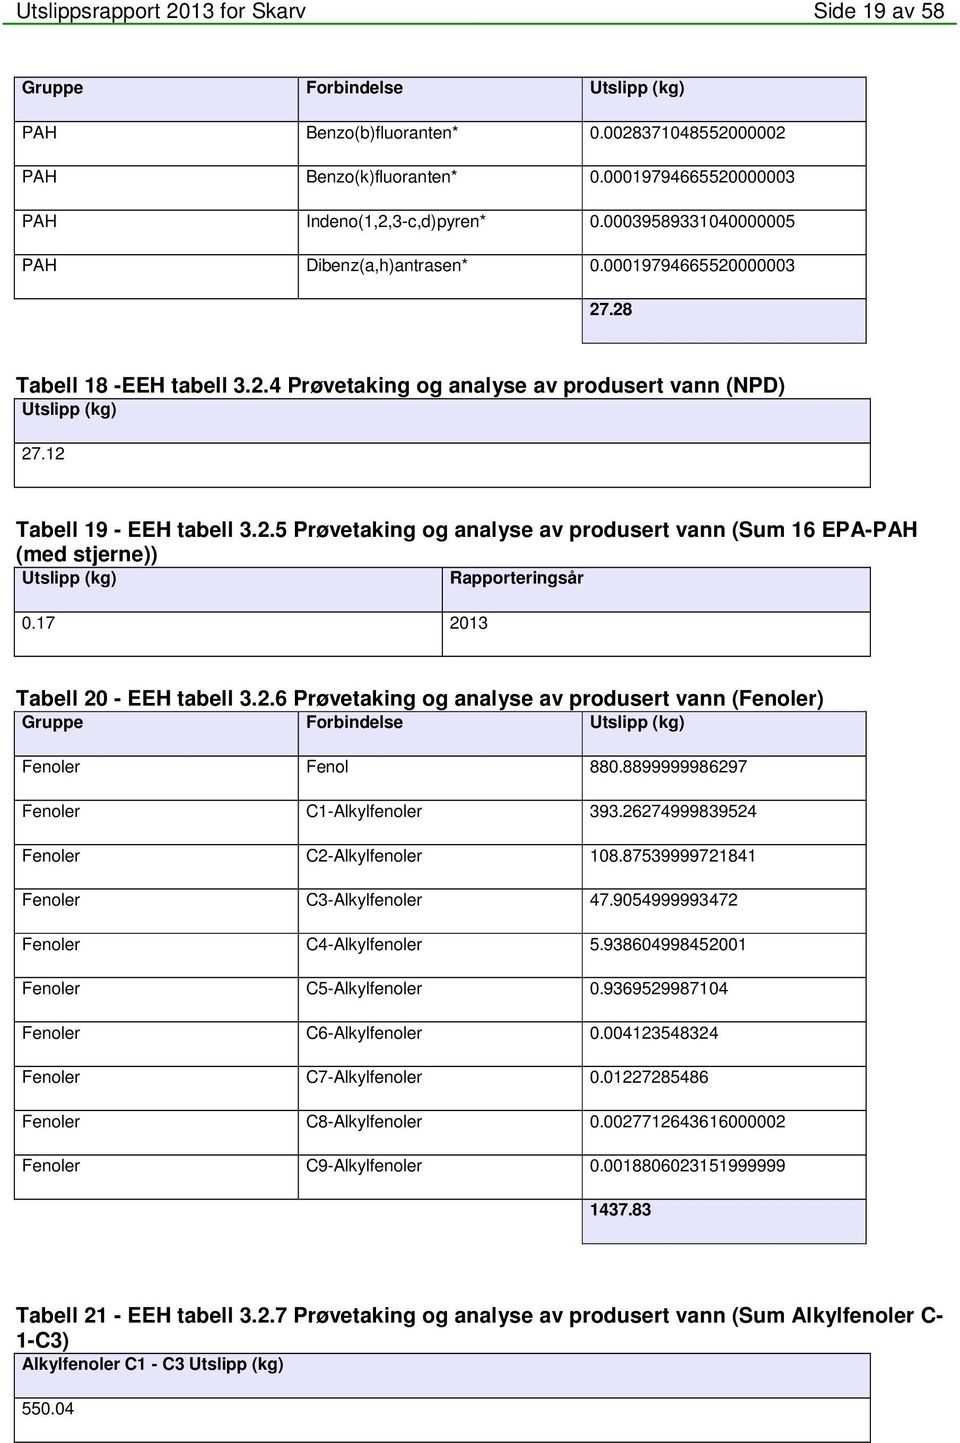 17 2013 Tabell 20 - EEH tabell 3.2.6 Prøvetaking og analyse av produsert vann (Fenoler) Gruppe Forbindelse (kg) Fenoler Fenol 880.8899999986297 Fenoler C1-Alkylfenoler 393.